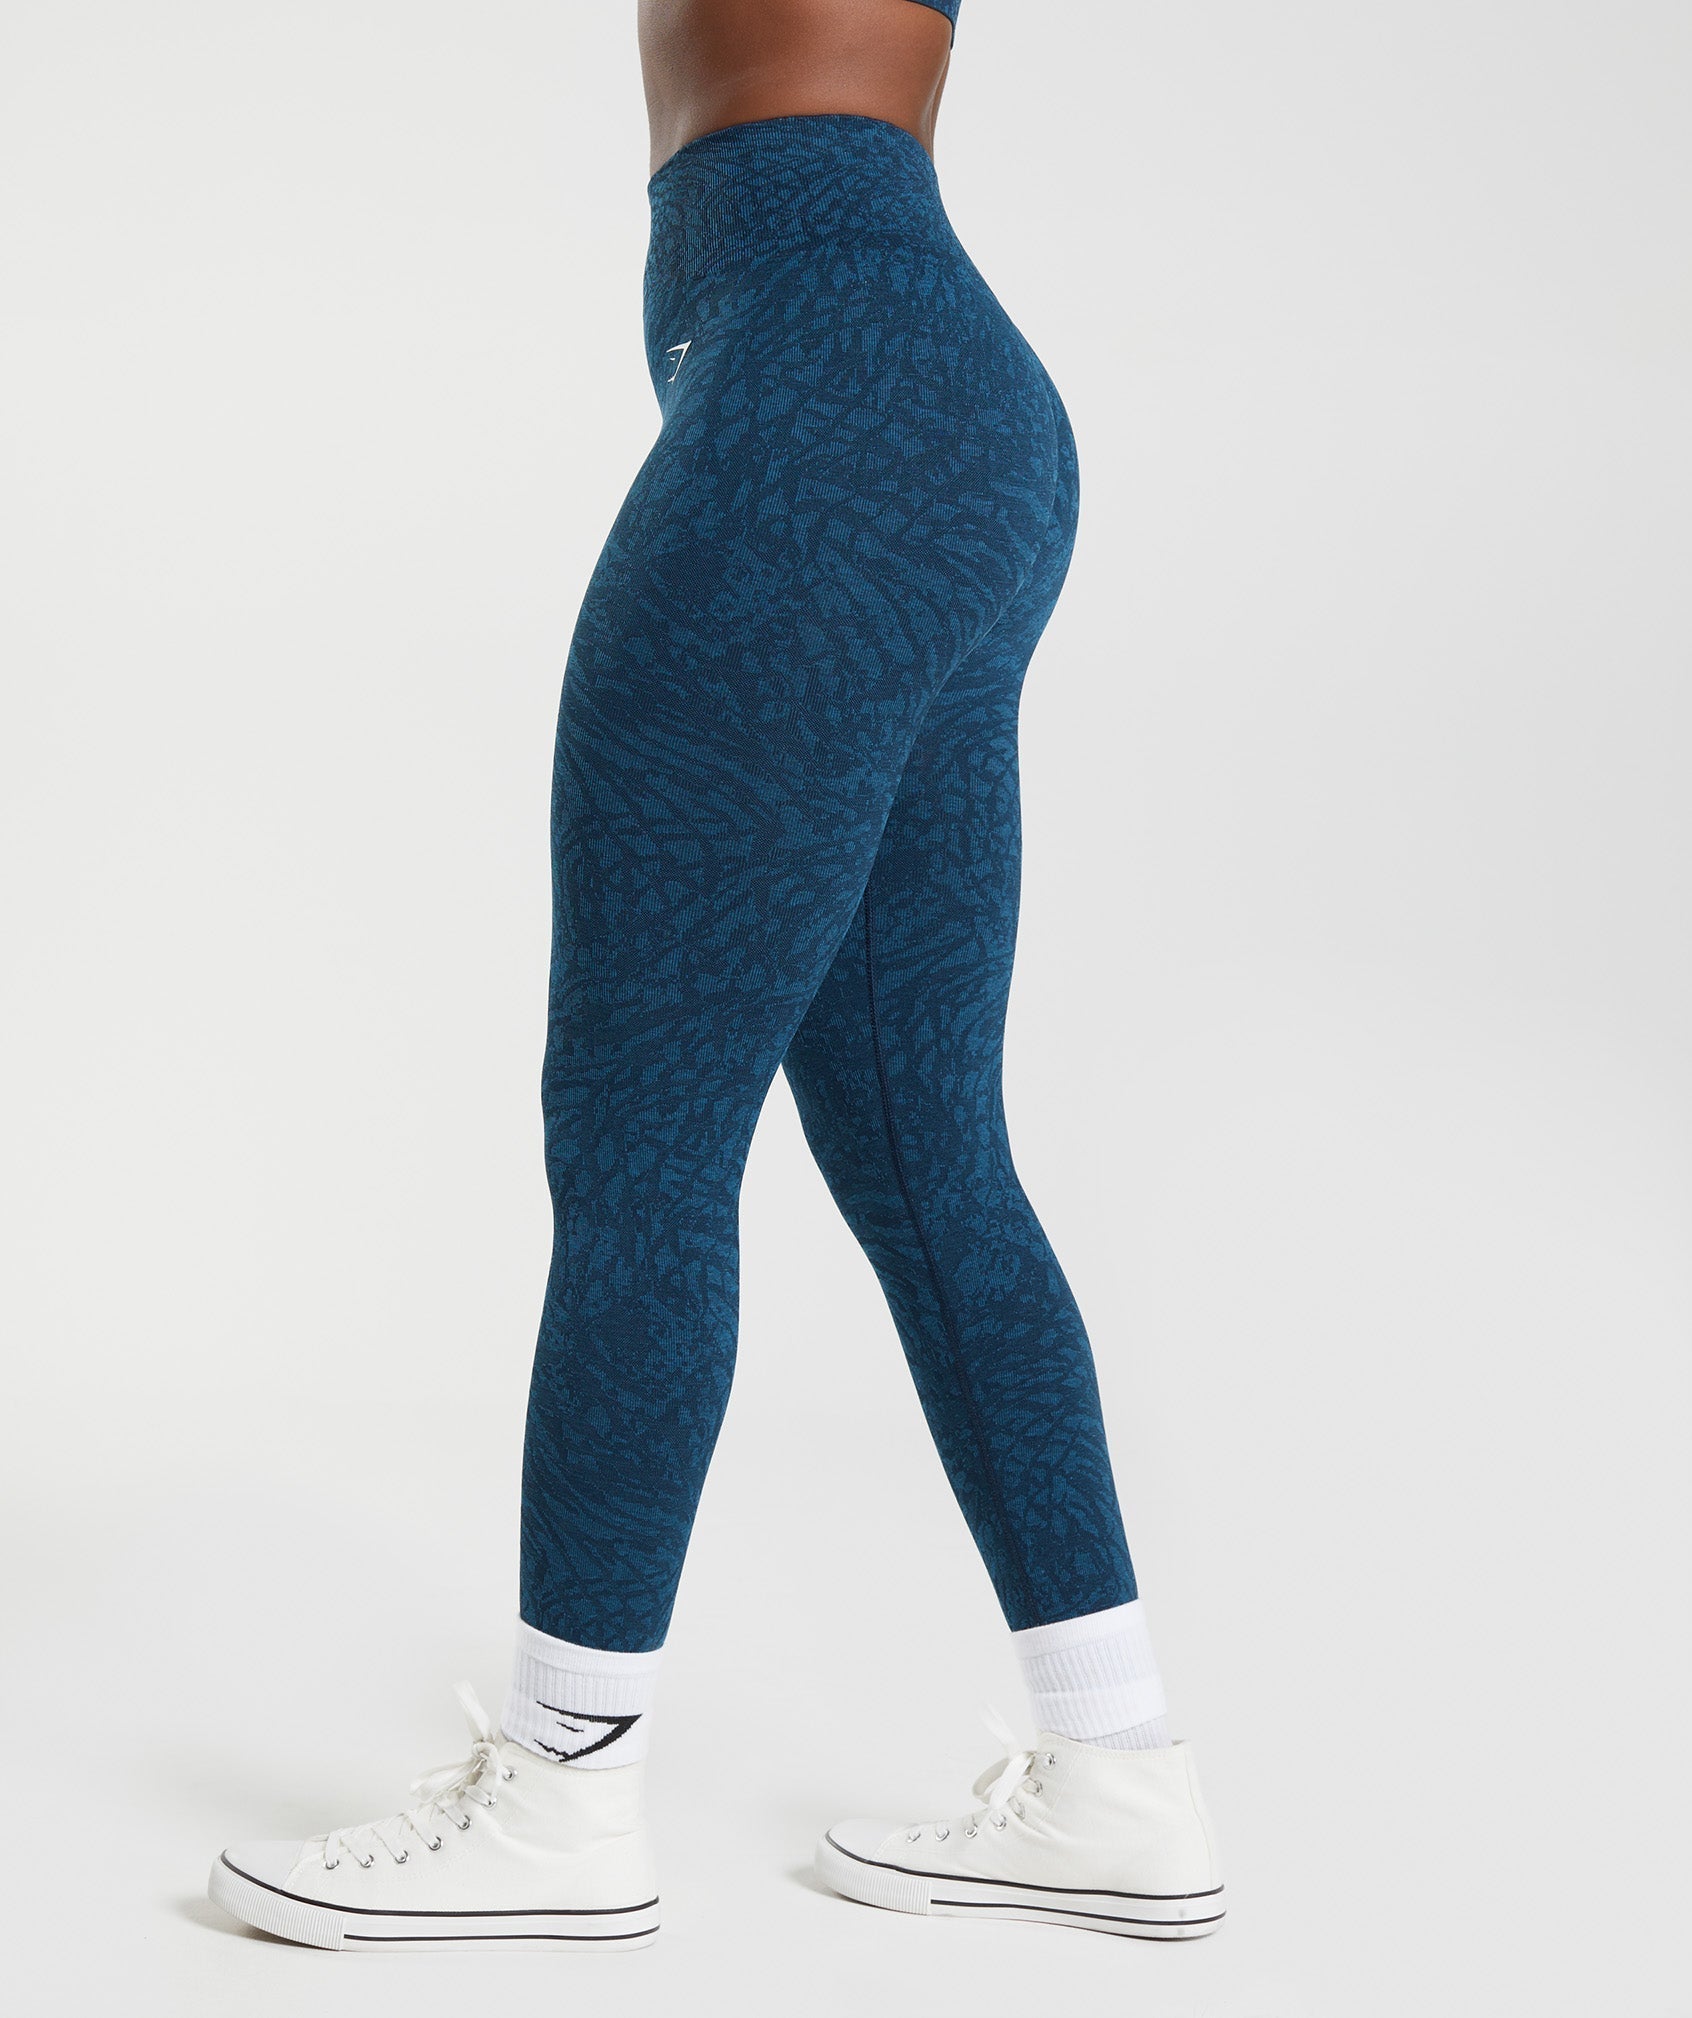 Teal & Navy Leopard Women's Activewear Leggings - Tall 33” inside